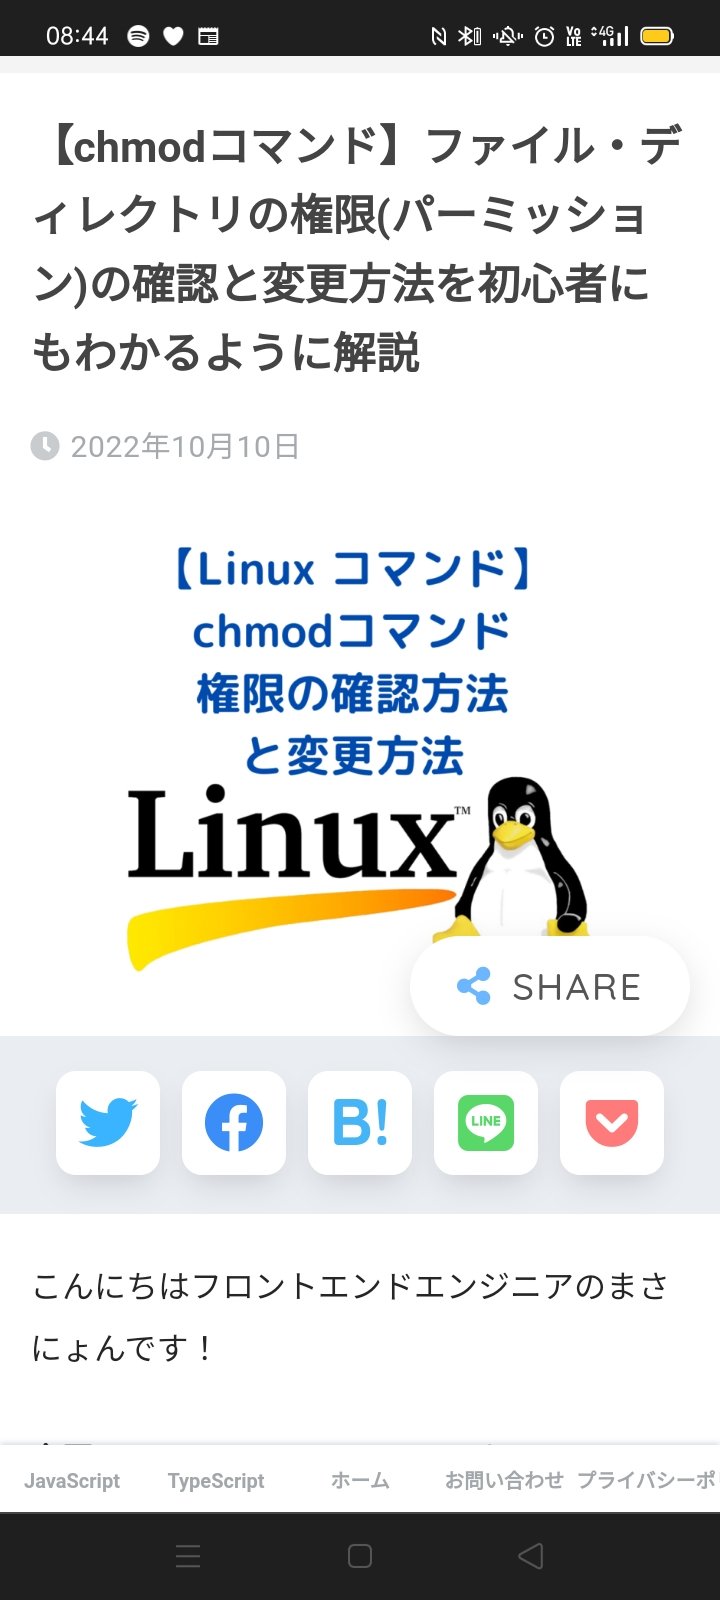 まさにょん フロントエンドエンジニア Twitterren Chmodコマンド ファイル ディレクトリの権限 パーミッション の確認と 変更方法を初心者にもわかるように解説 記事はこちら T Co Legzeiarks Web制作 Web開発 Cli Linux エンジニア